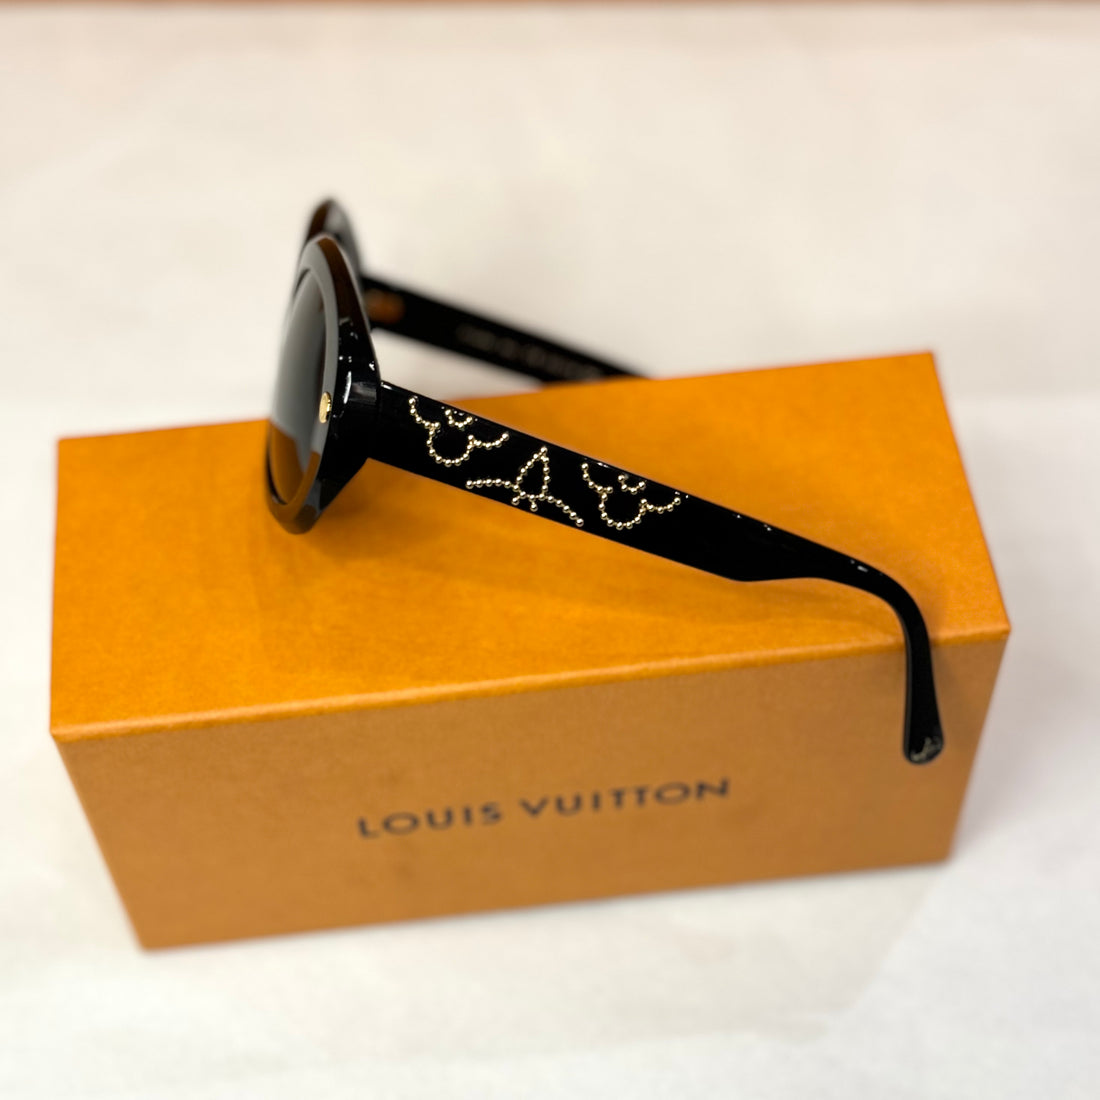 Louis Vuitton – Sonnenbrillen